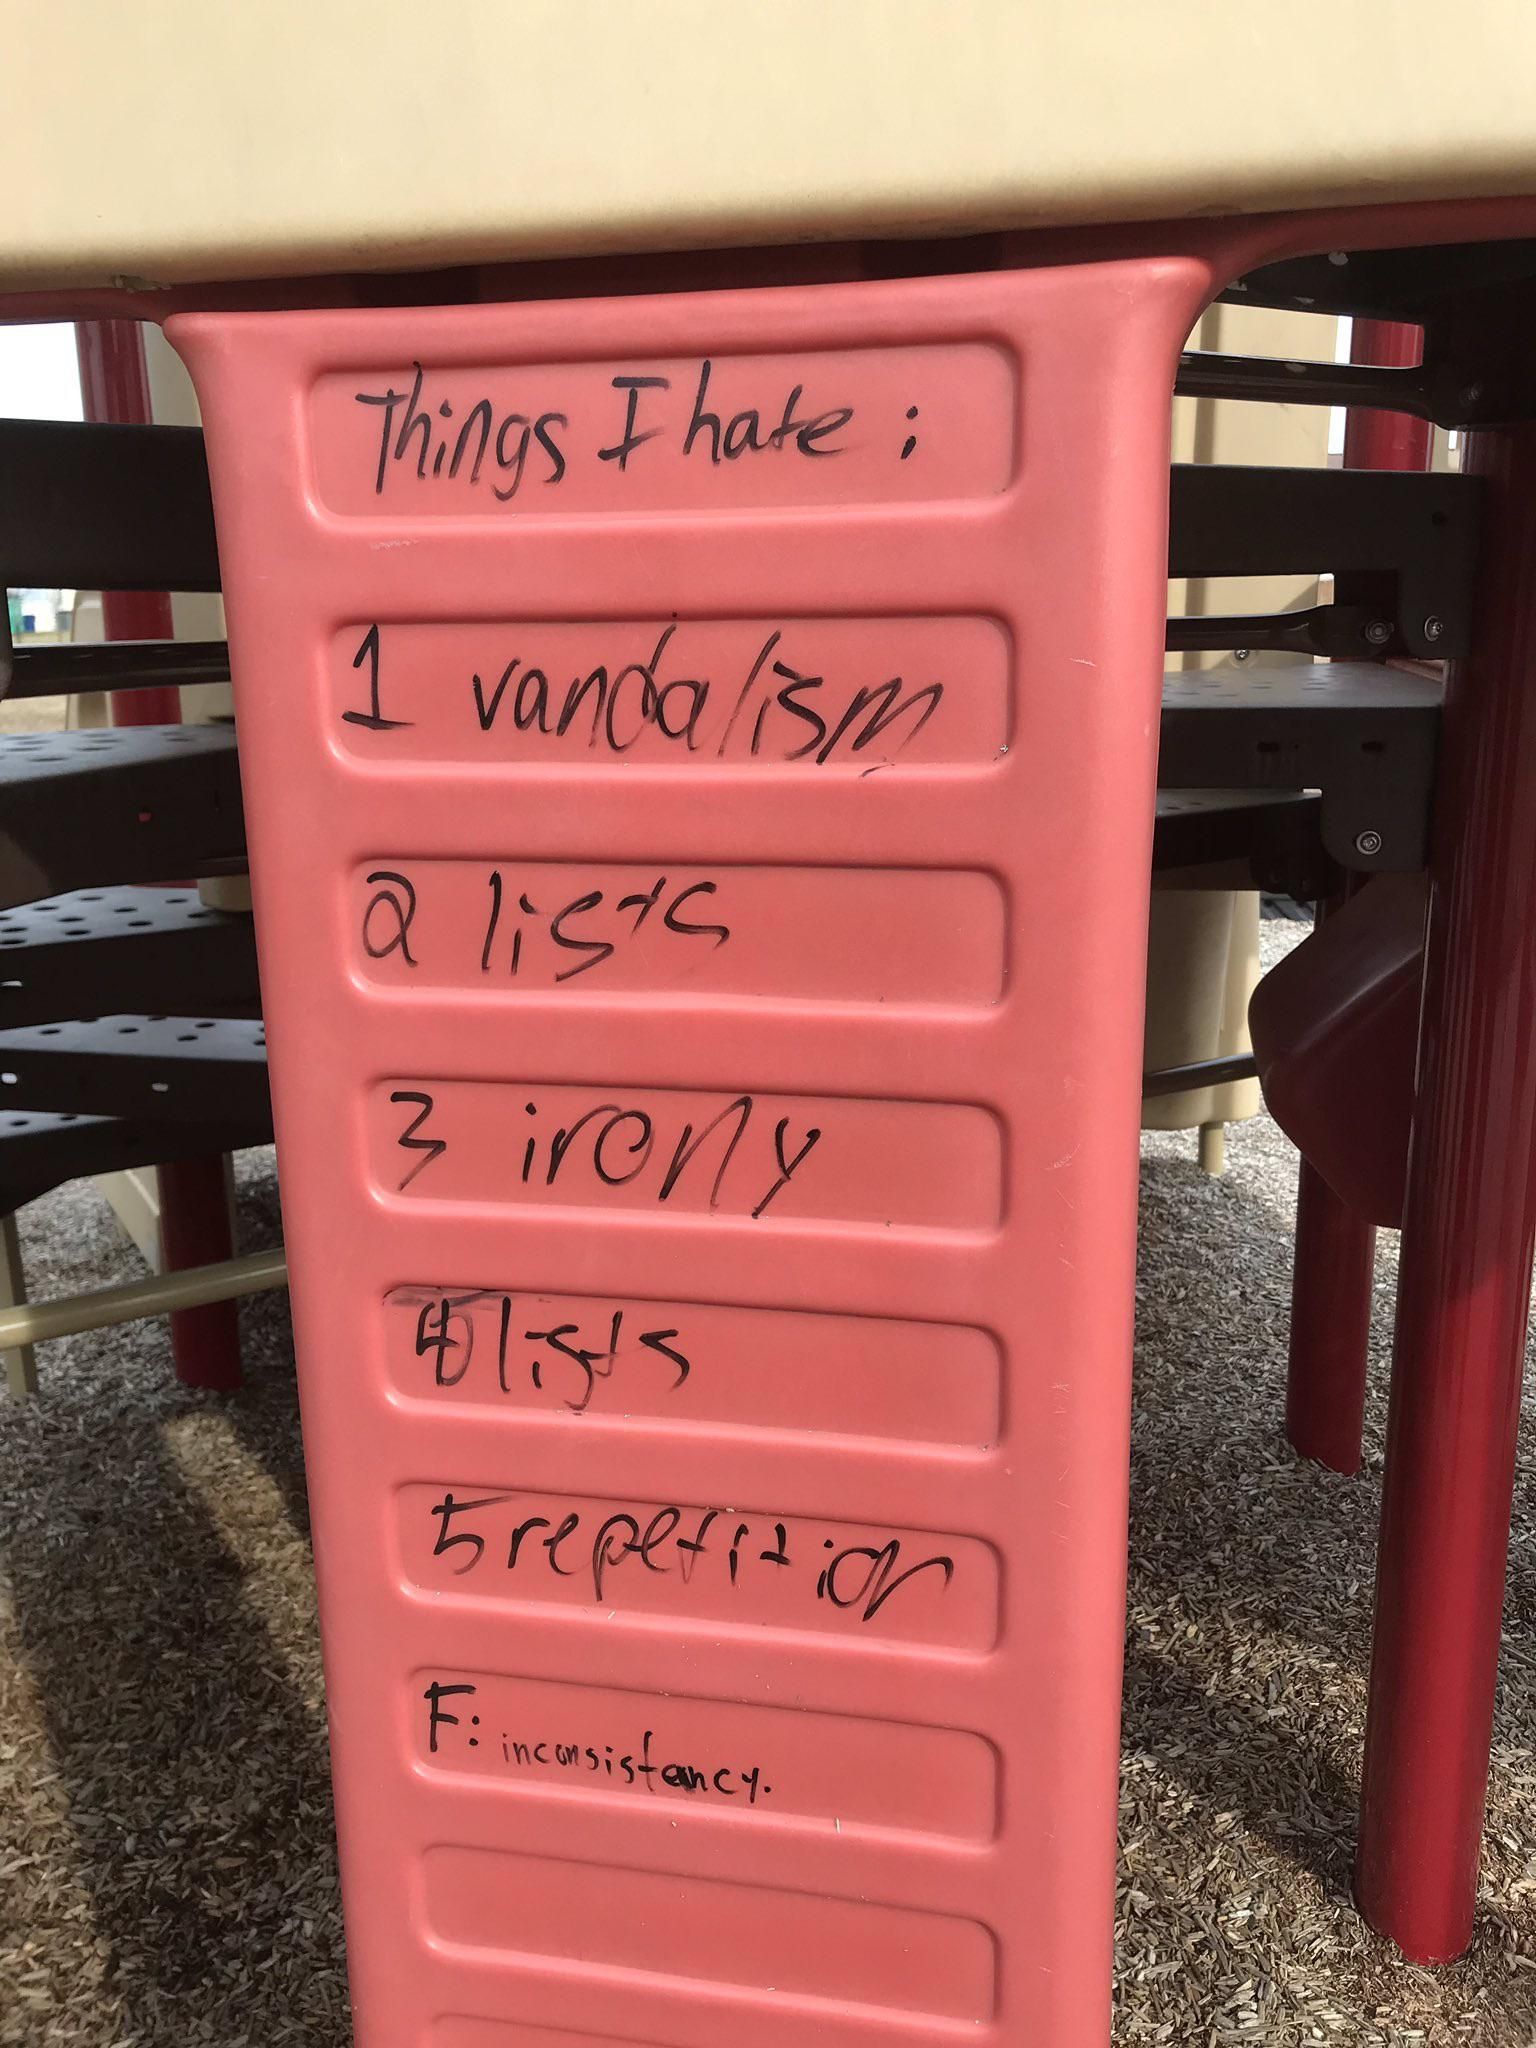 Playground vandalism